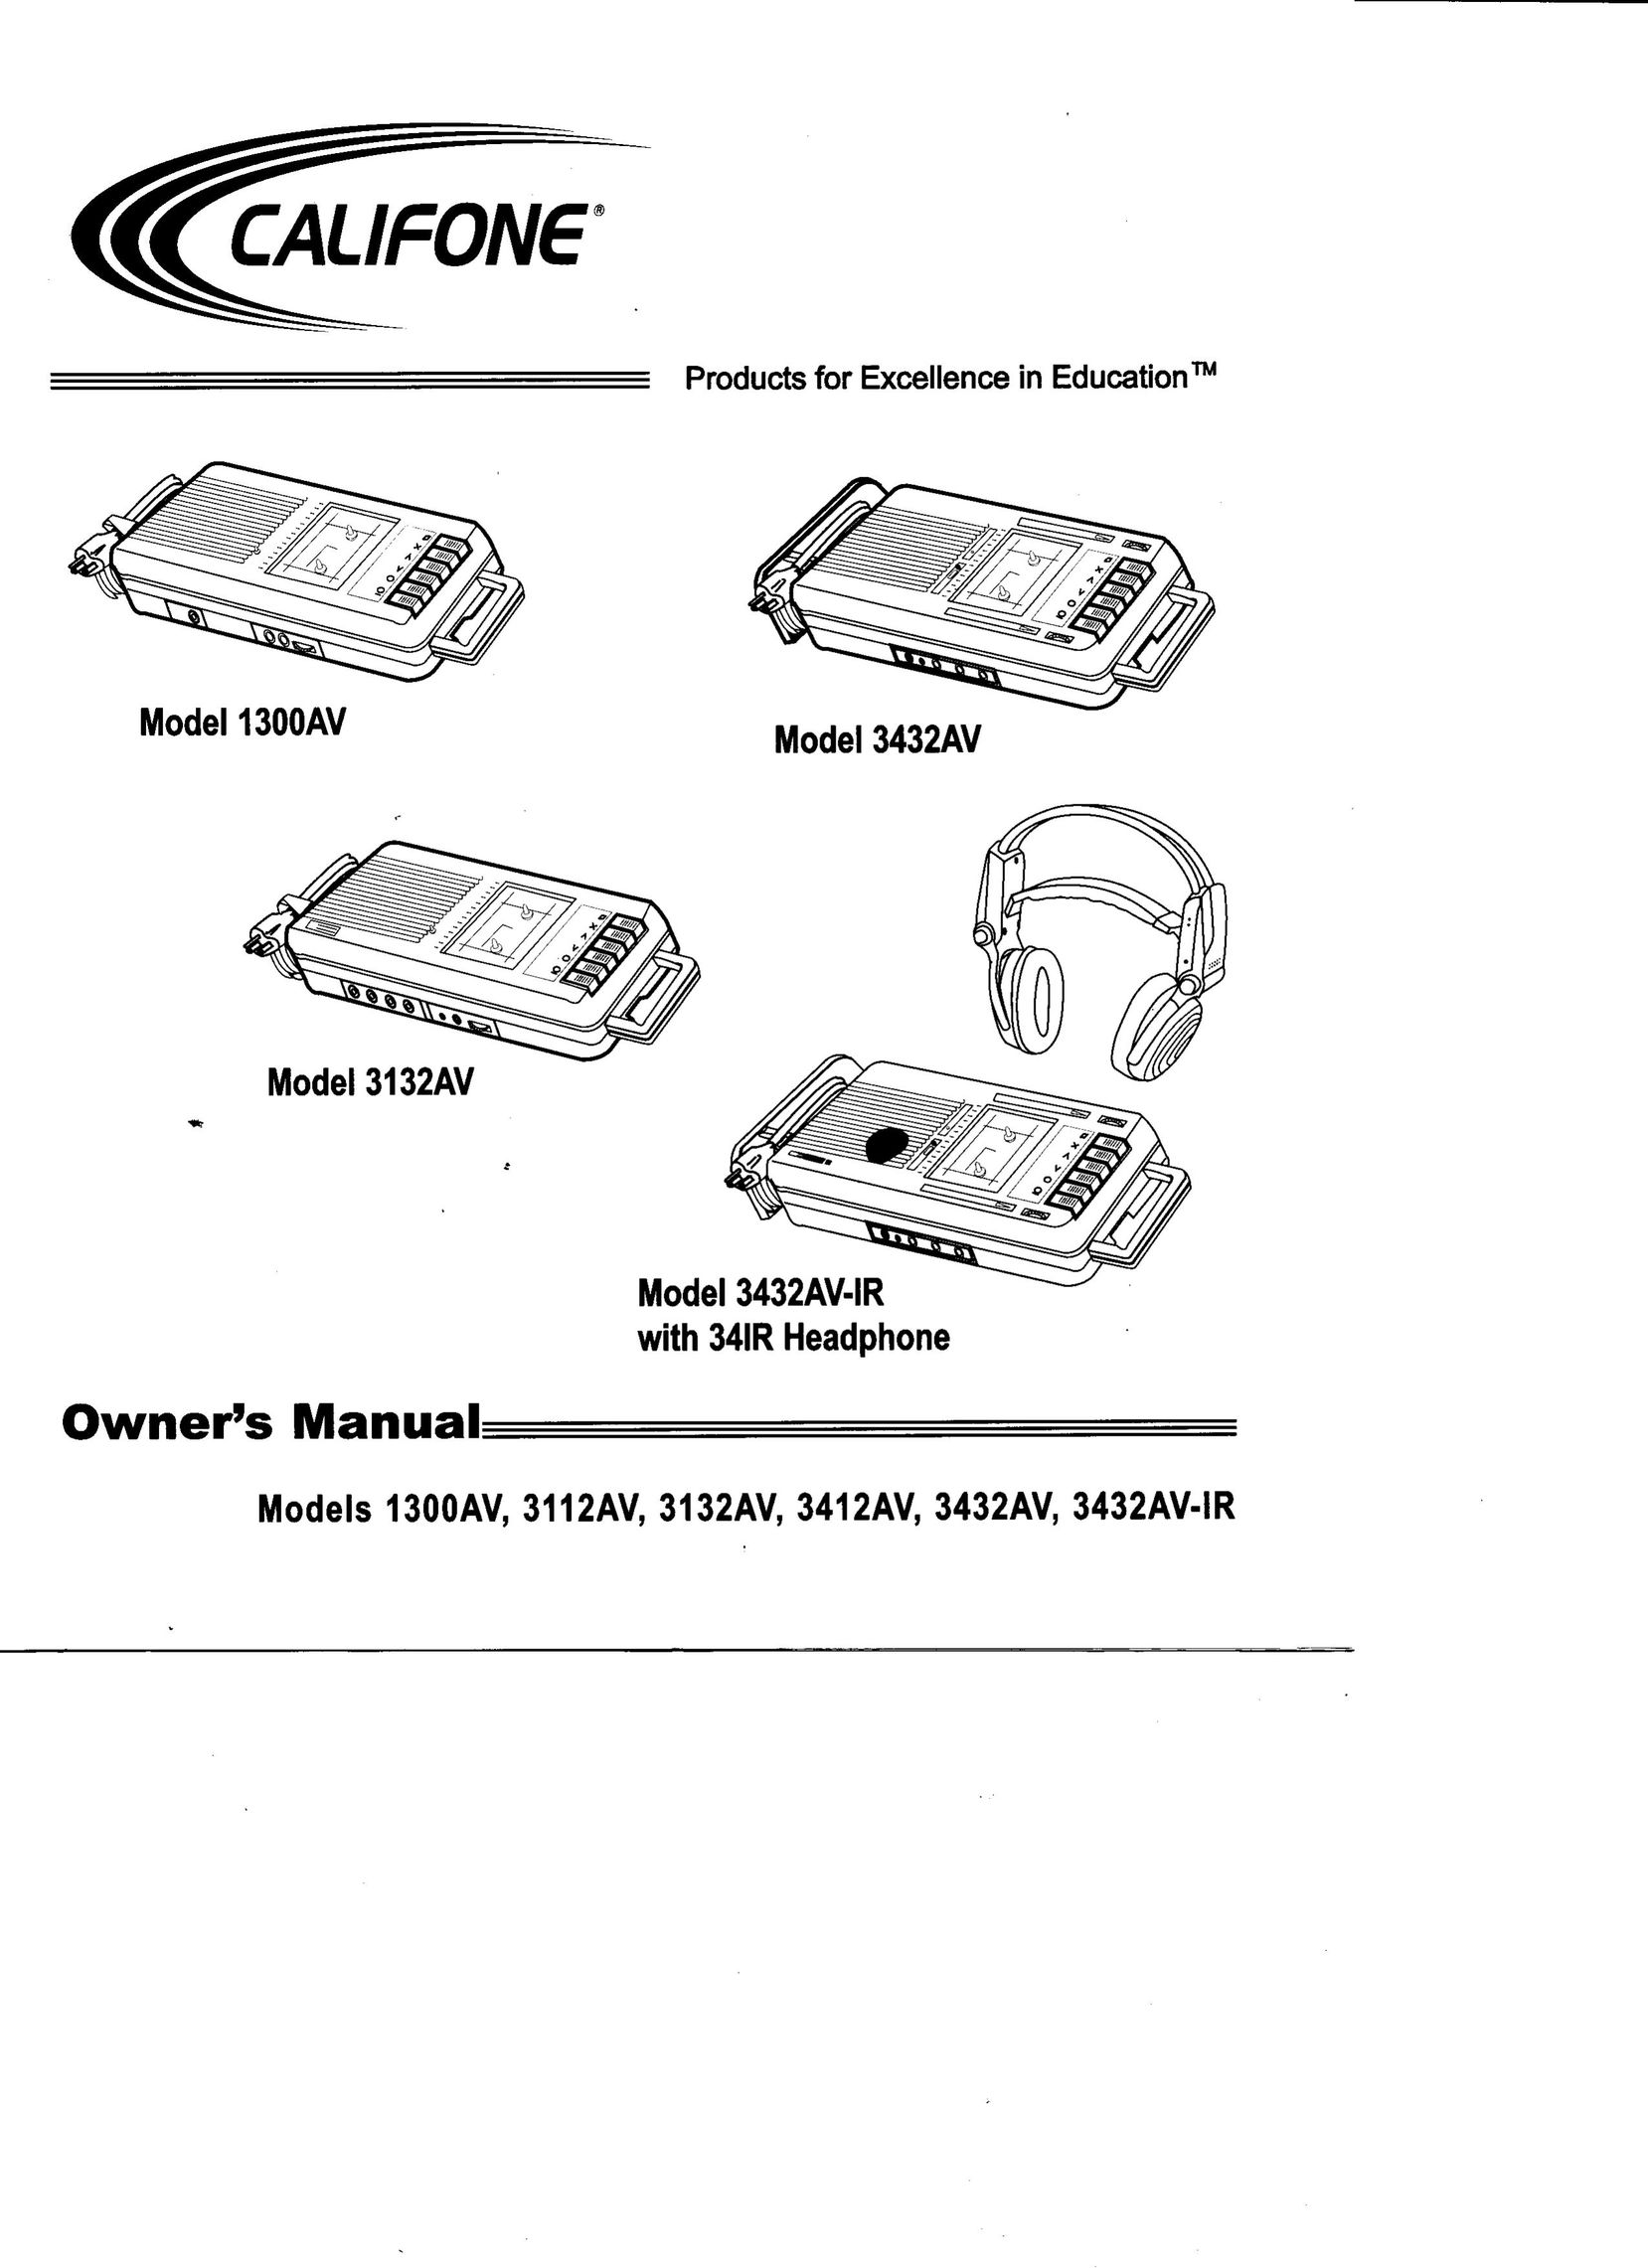 Califone 3112AV Cassette Player User Manual (Page 1)